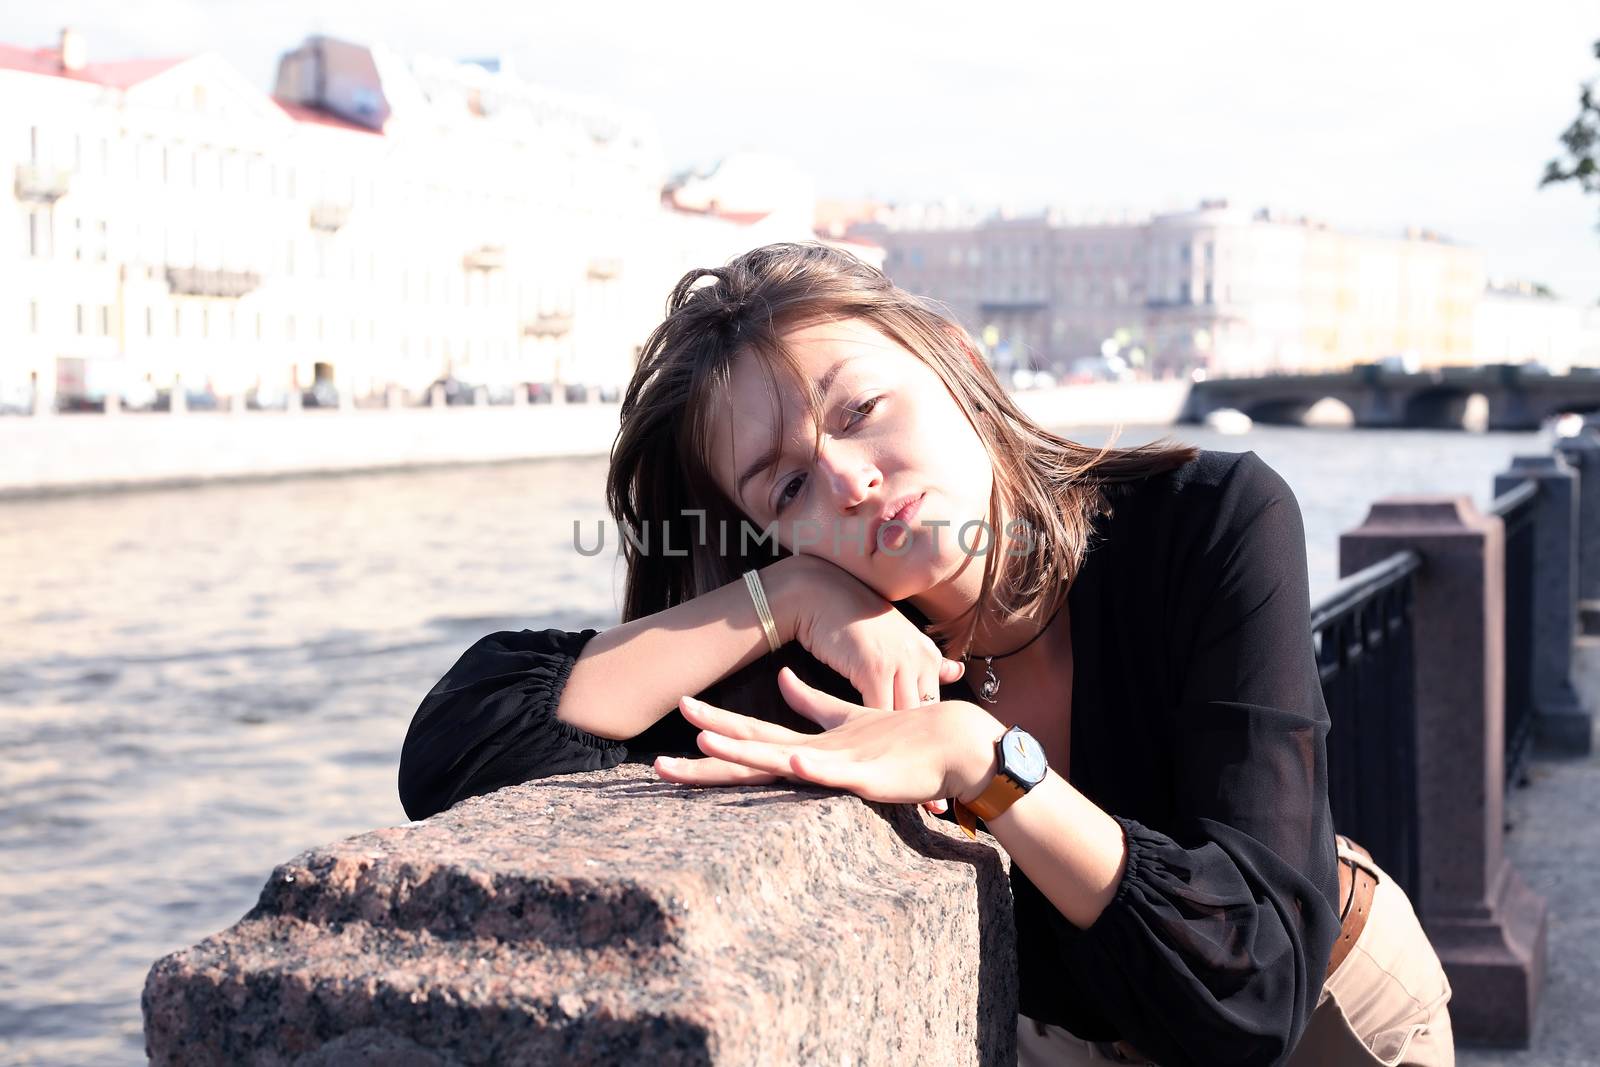 Girl In City Near River by kvkirillov